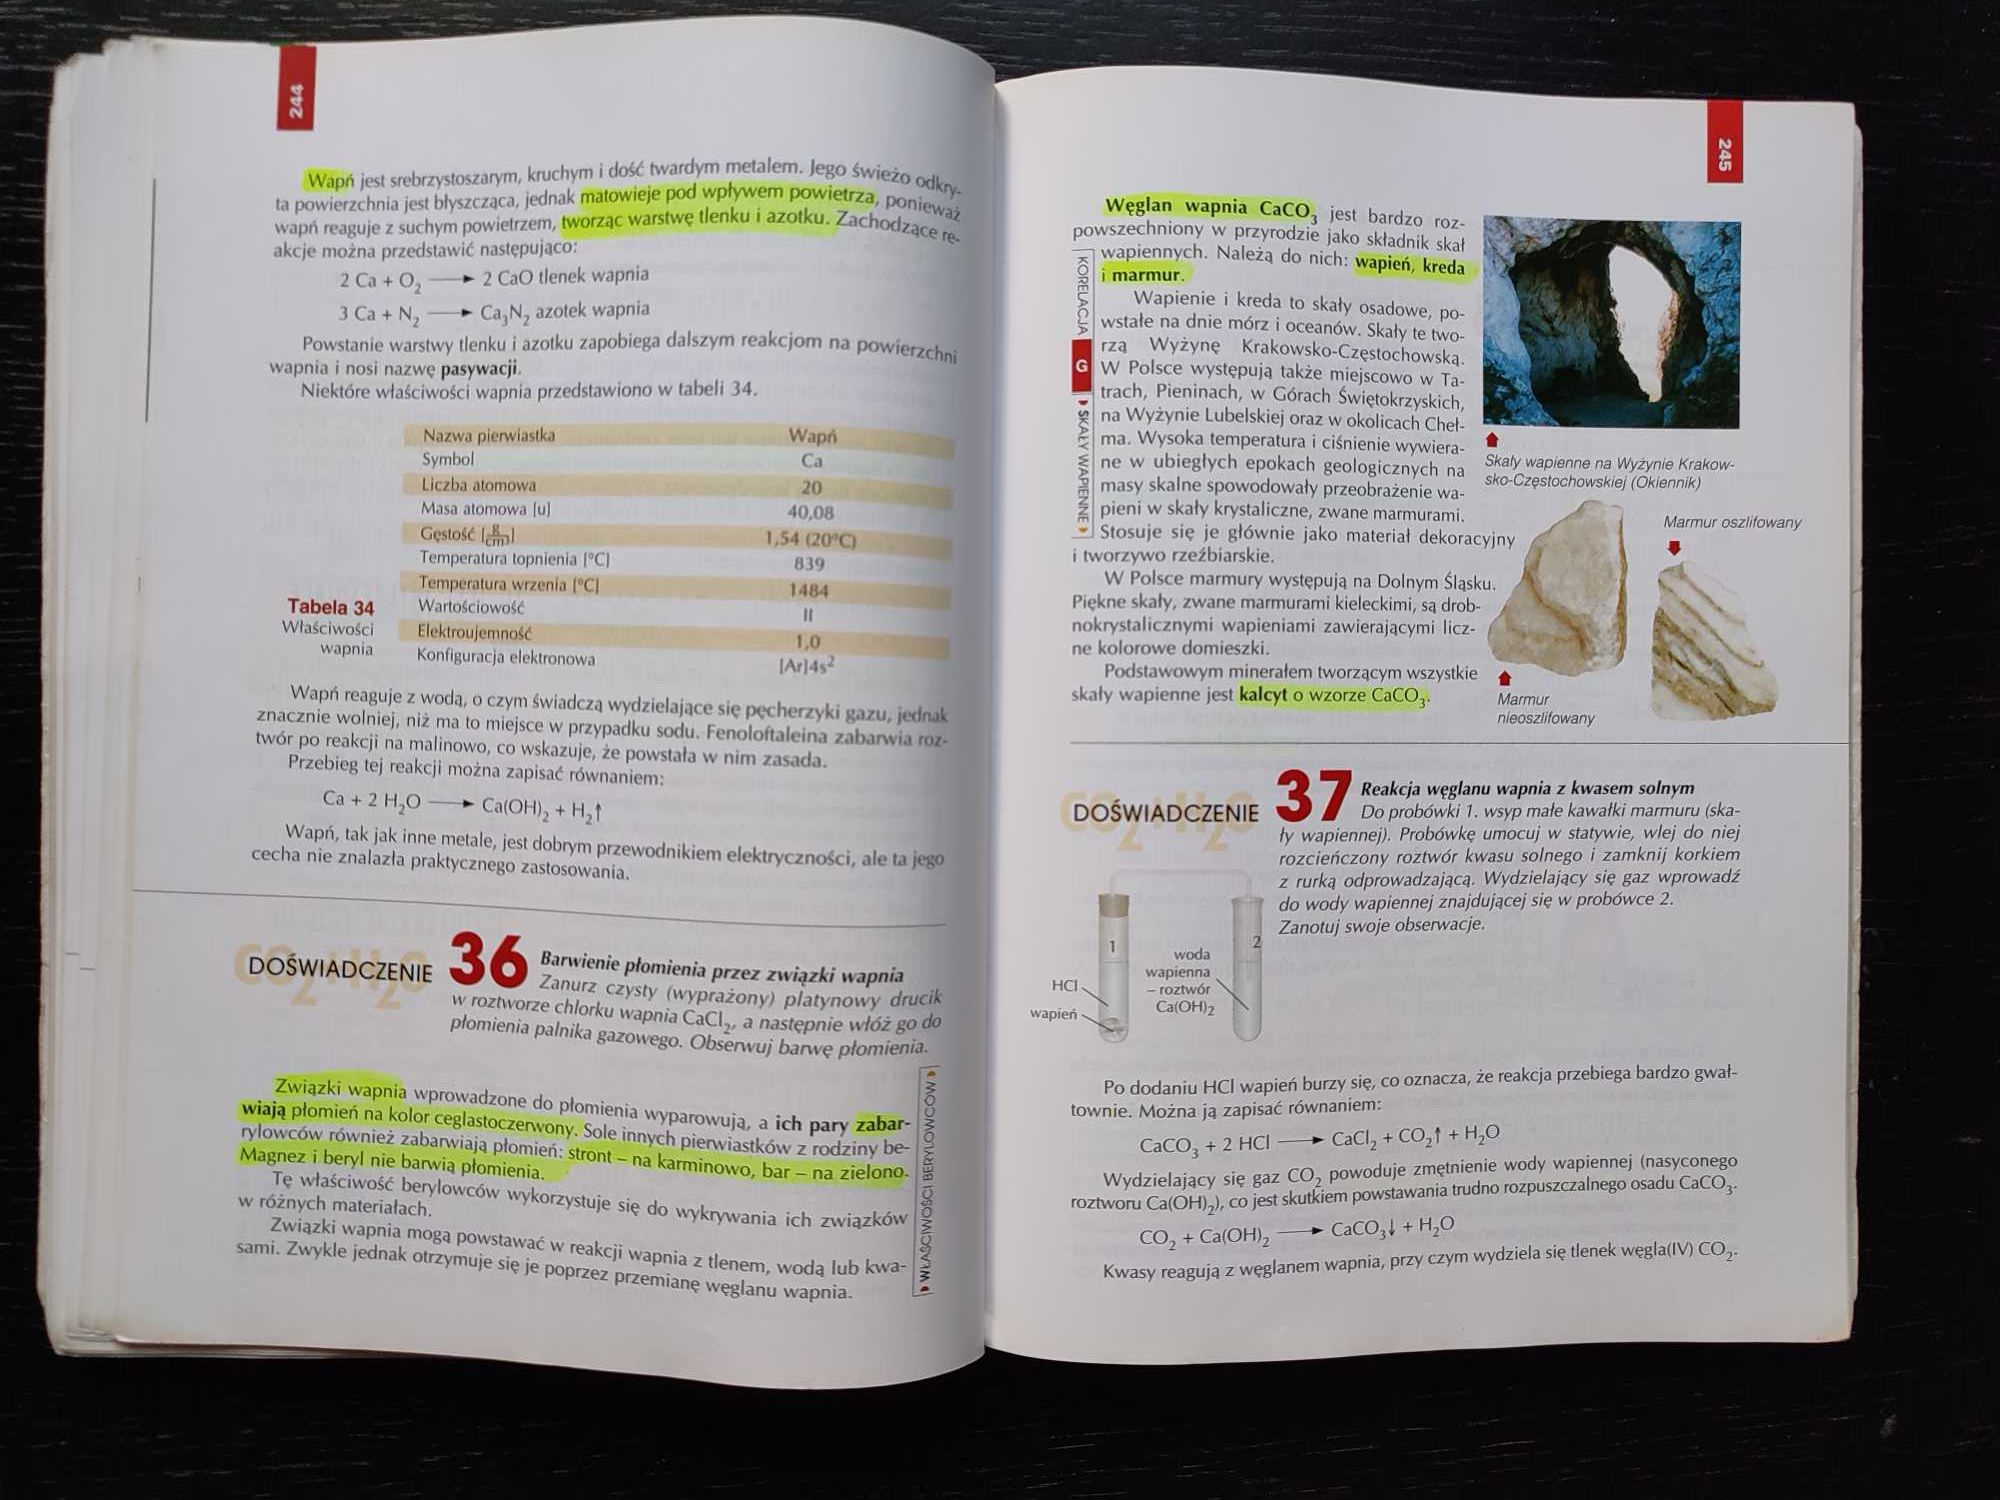 Chemia ogólna i nieorganiczna 1, podręcznik